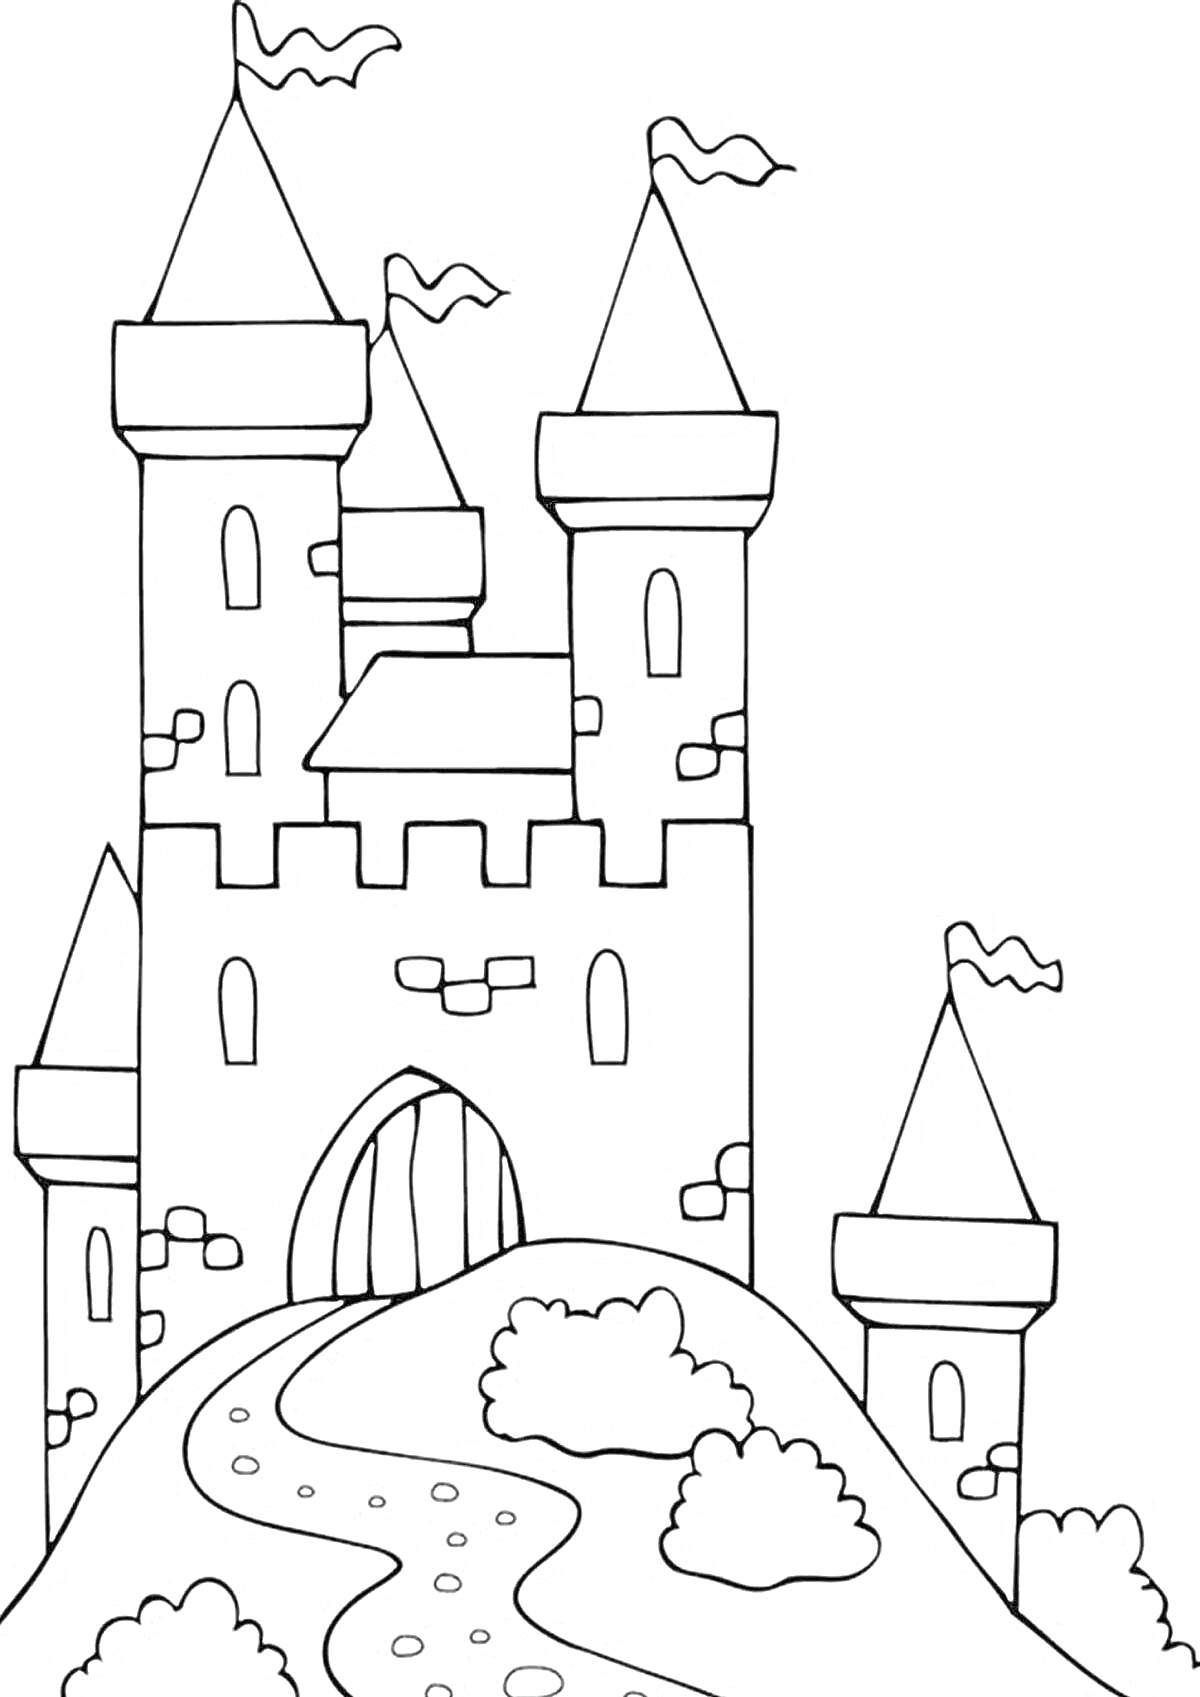 Раскраска Замок с башнями, флагами и дорожкой на холме с кустами